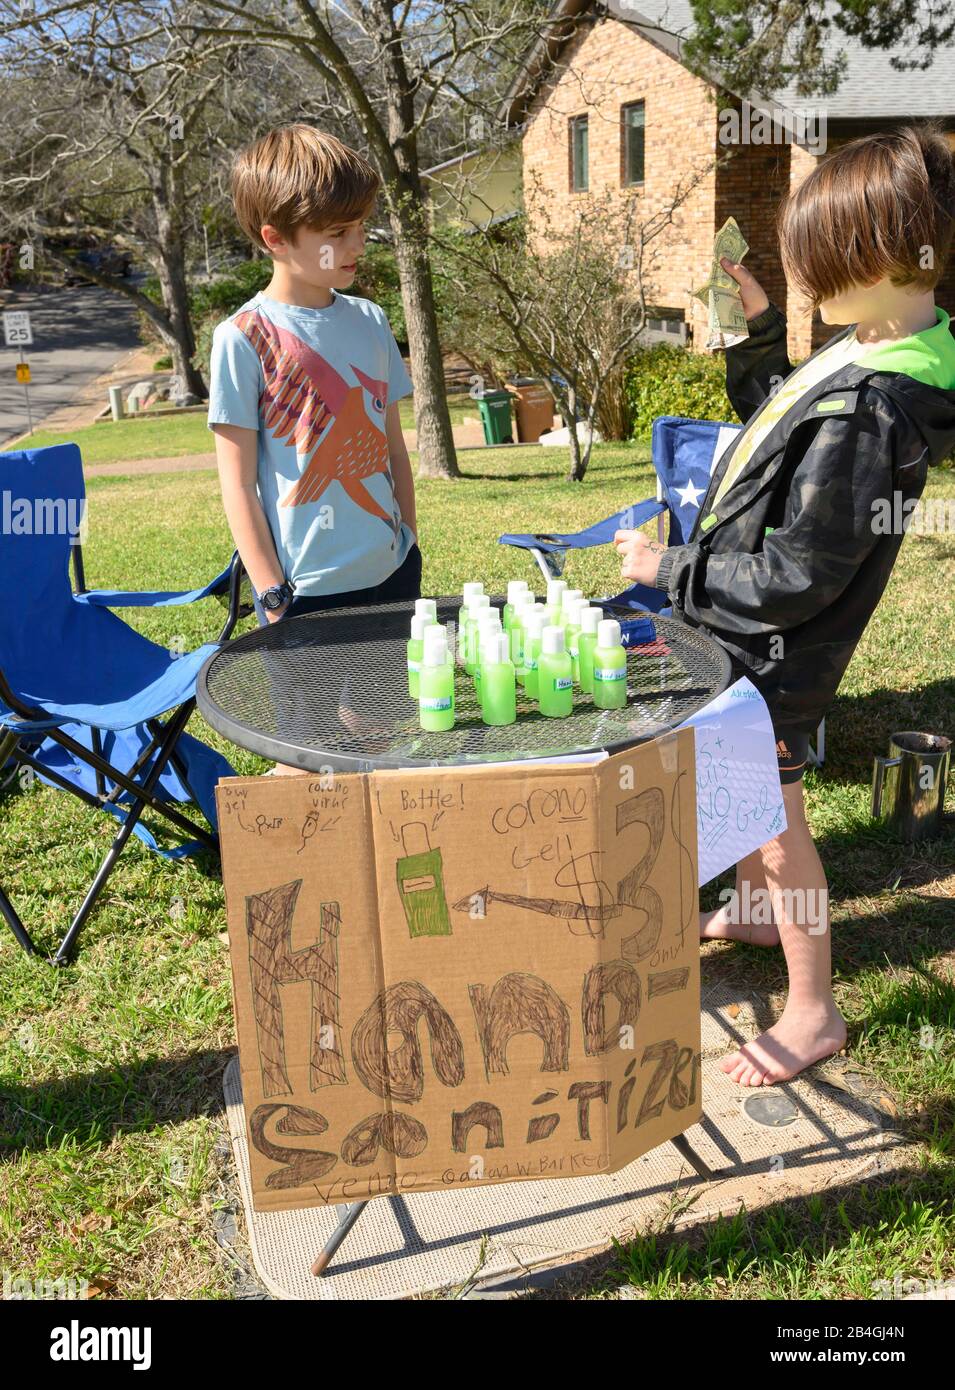 L'assainisseur pour les mains remplace la limonade alors que les jeunes entrepreneurs Miles Miller et Louis Spindle vendent de l'aseptisant pour les mains maison pour aider à combattre le coronavirus pour 3 $ une bouteille dans leur Austin, Texas, quartier après l'école. Banque D'Images